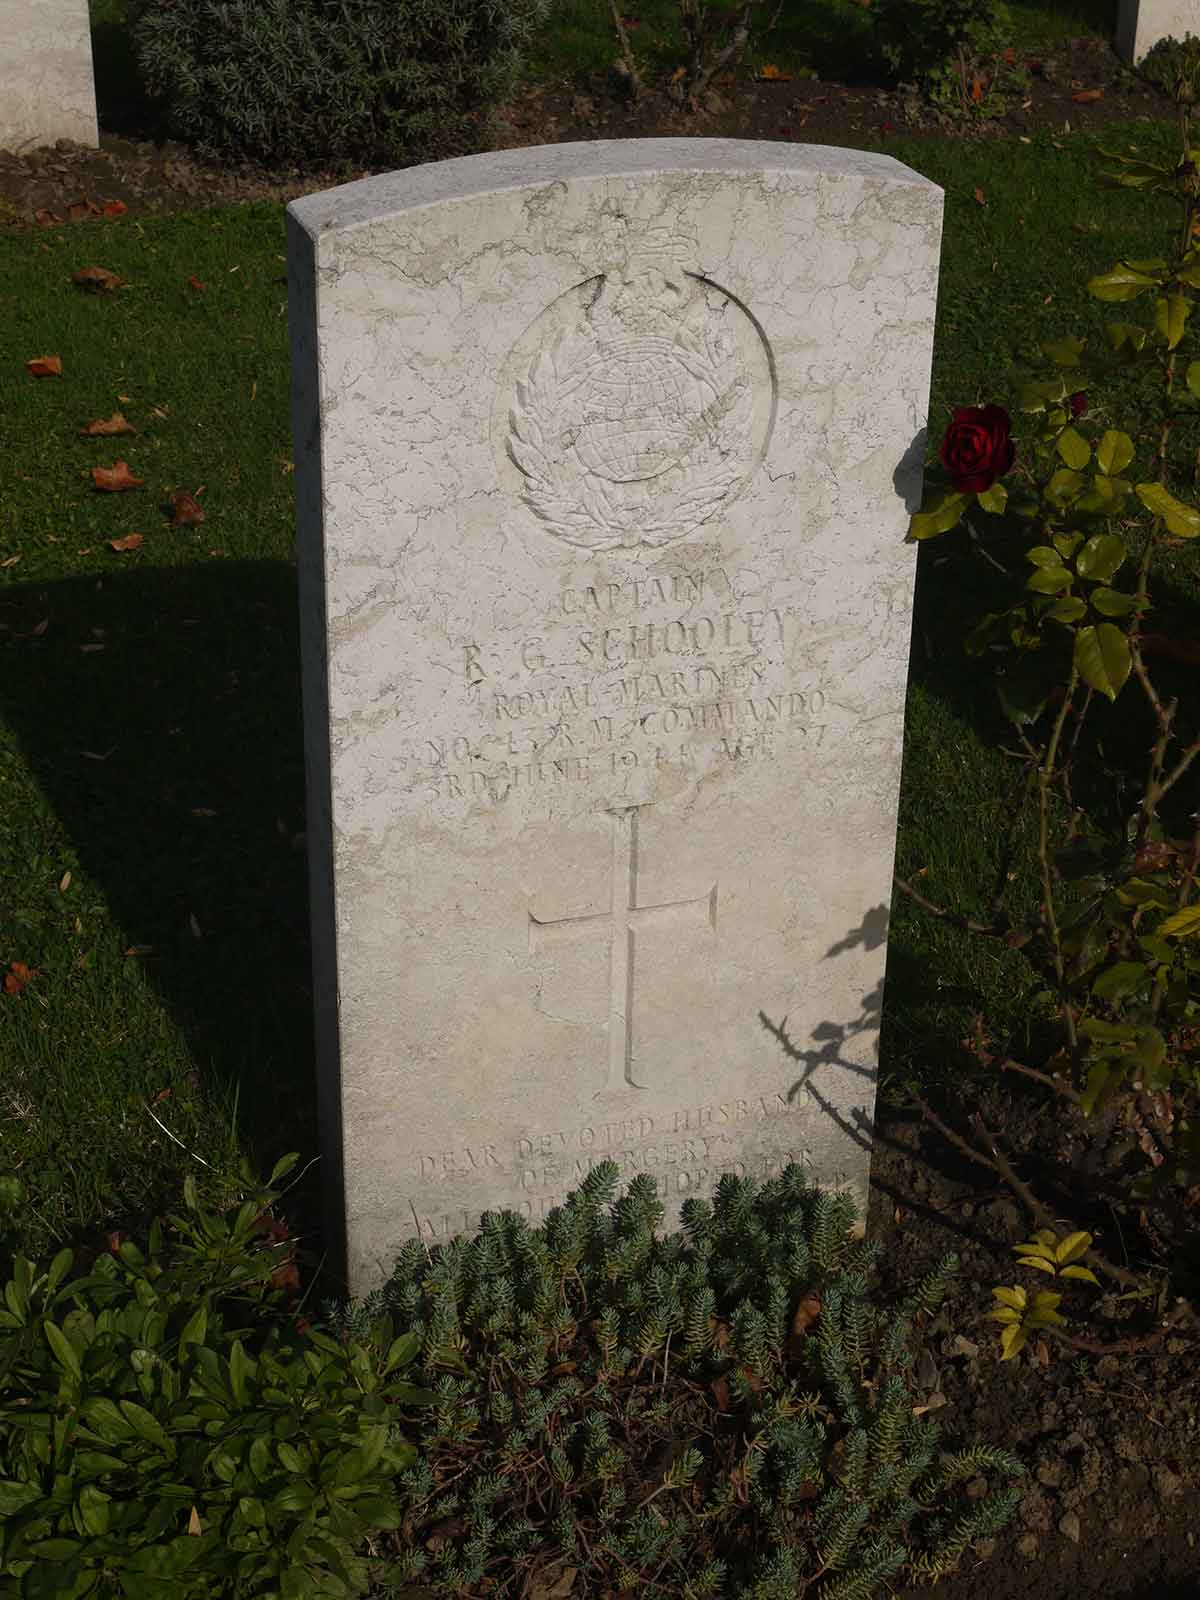 R. Schooley (Grave)